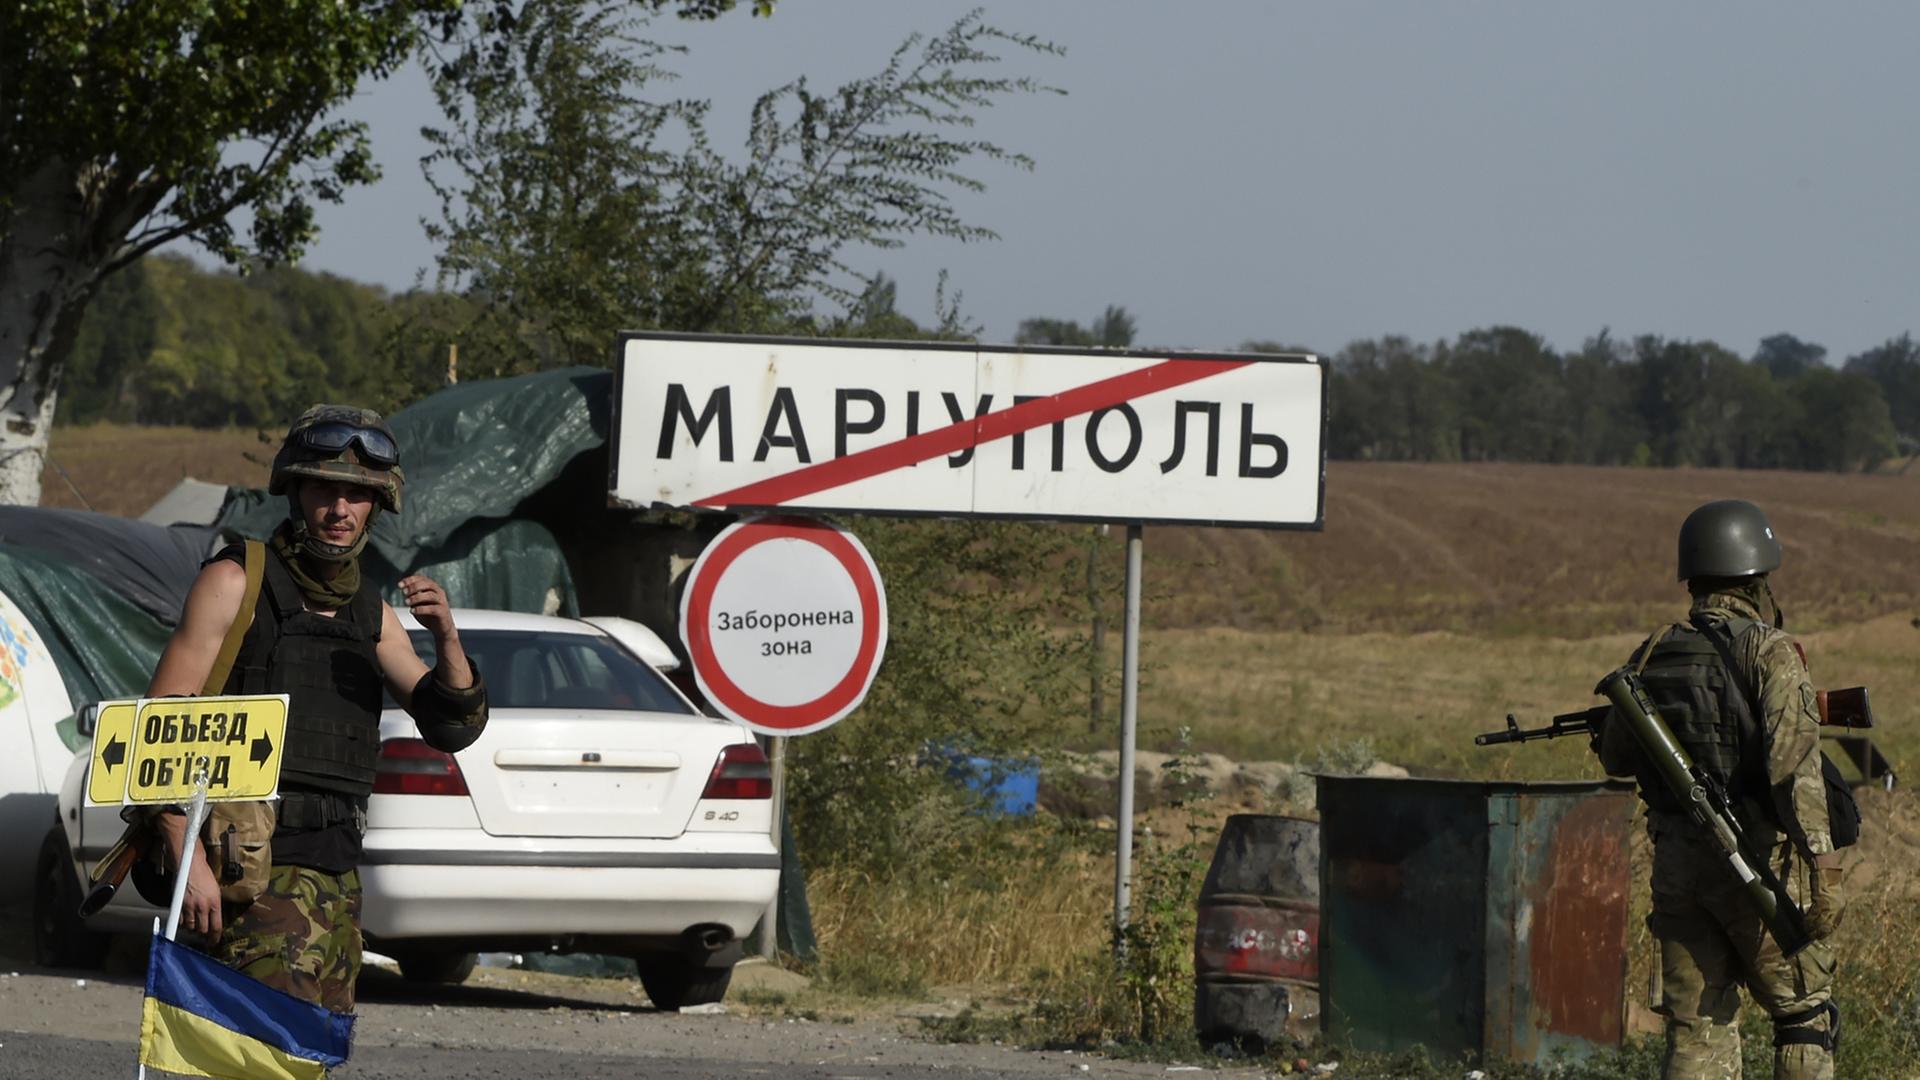 Ukrainische Soldaten vor einem Schild Mariupol.